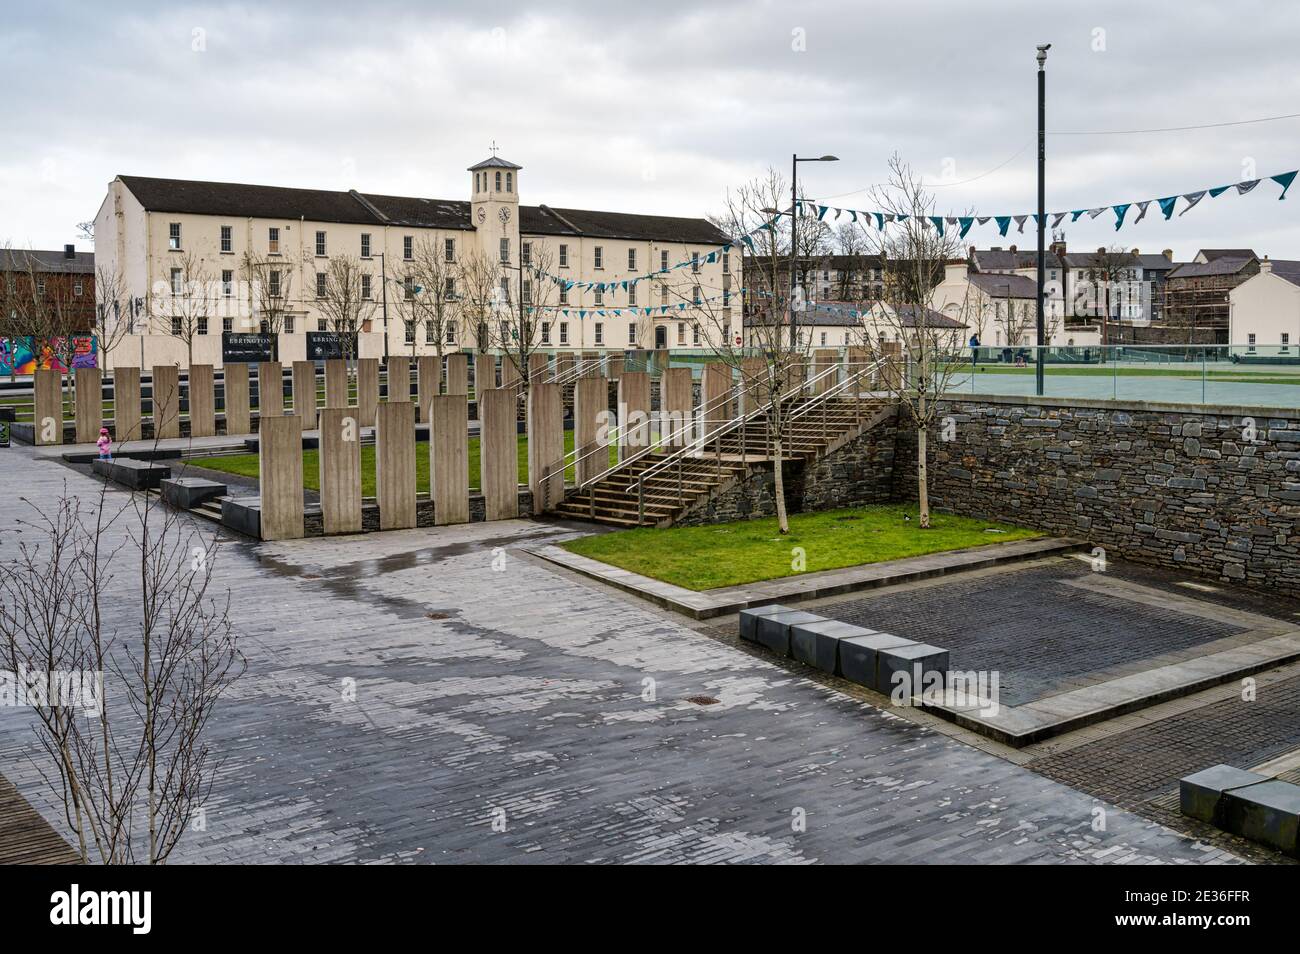 Derry, Northern Ireland- Jan 16, 2020: Ebrington Square  in Derry City, Northern Ireland Stock Photo